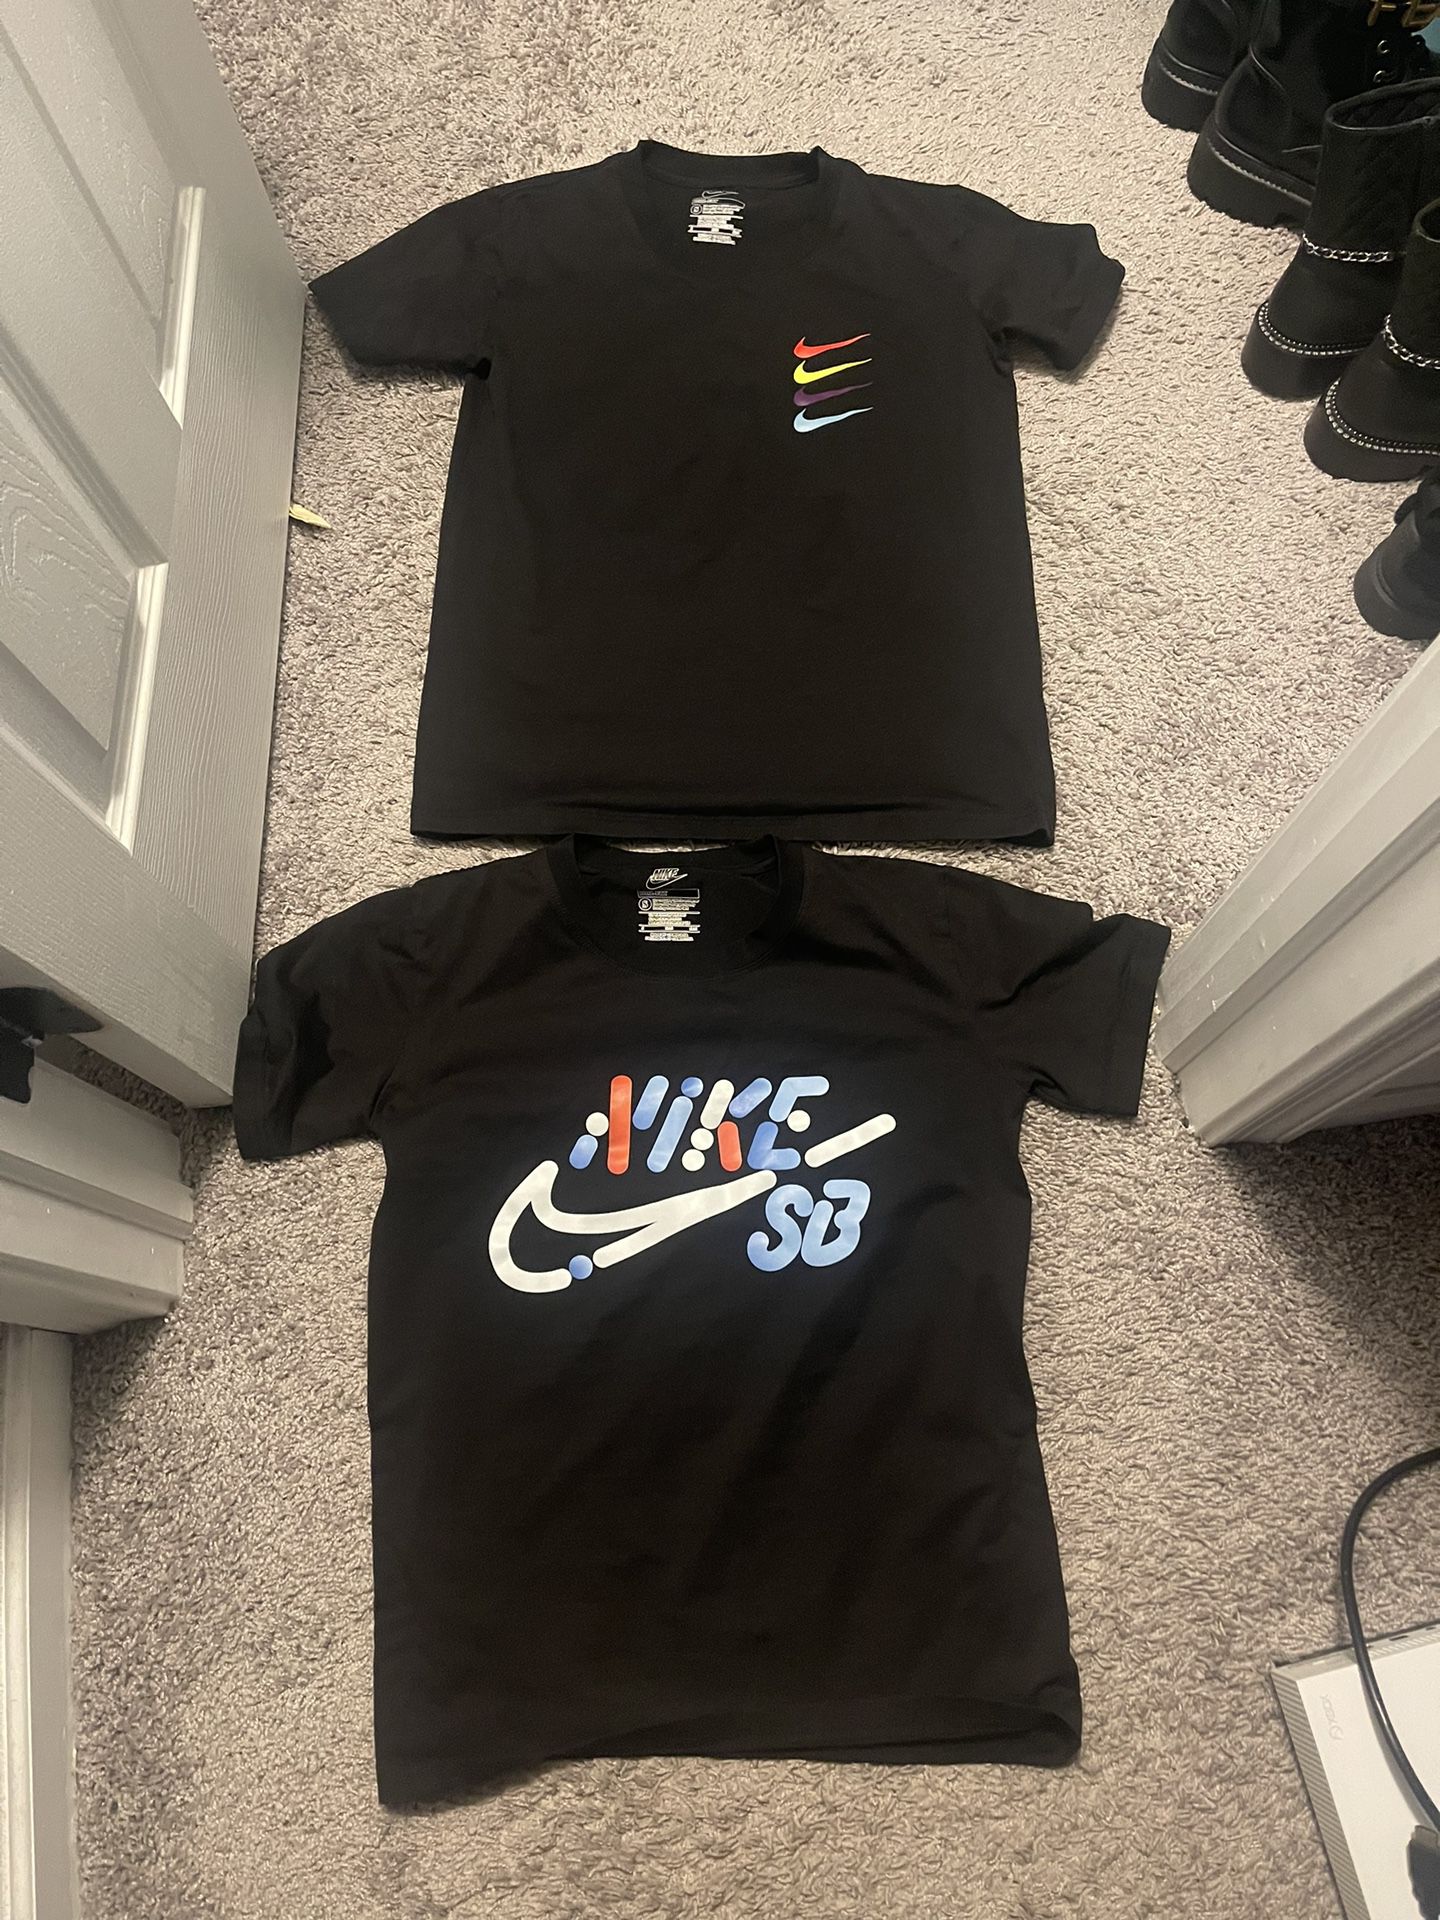 Nike t shirt Size small 